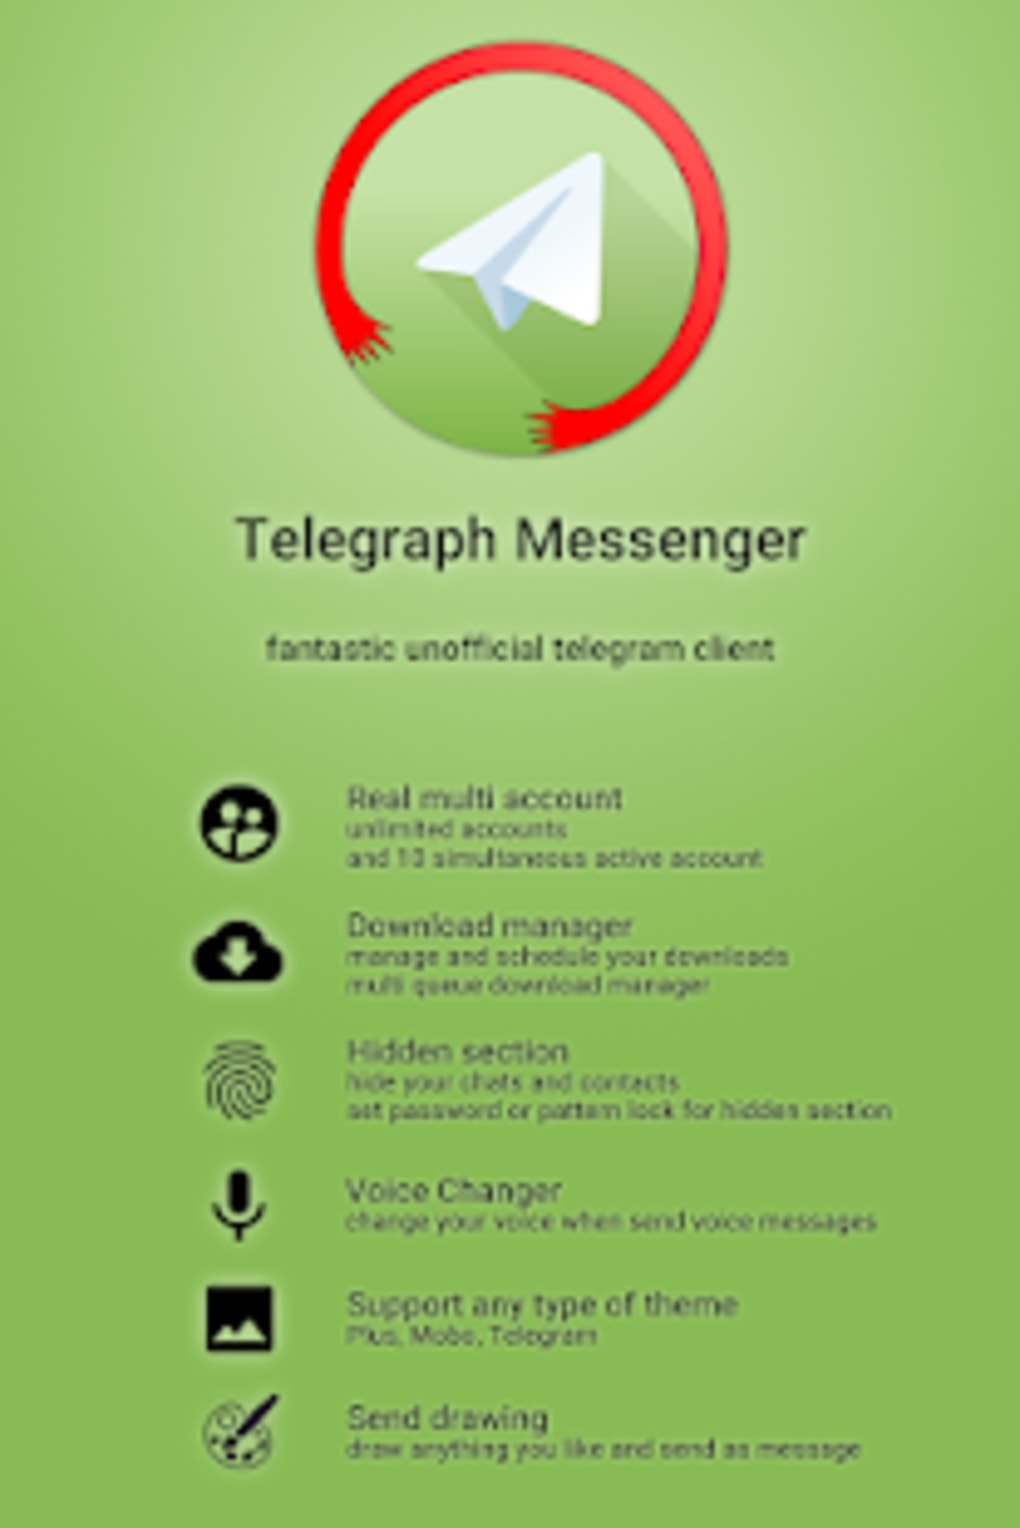 Скачать мессенджер телеграмм на андроид бесплатно на русском языке фото 48